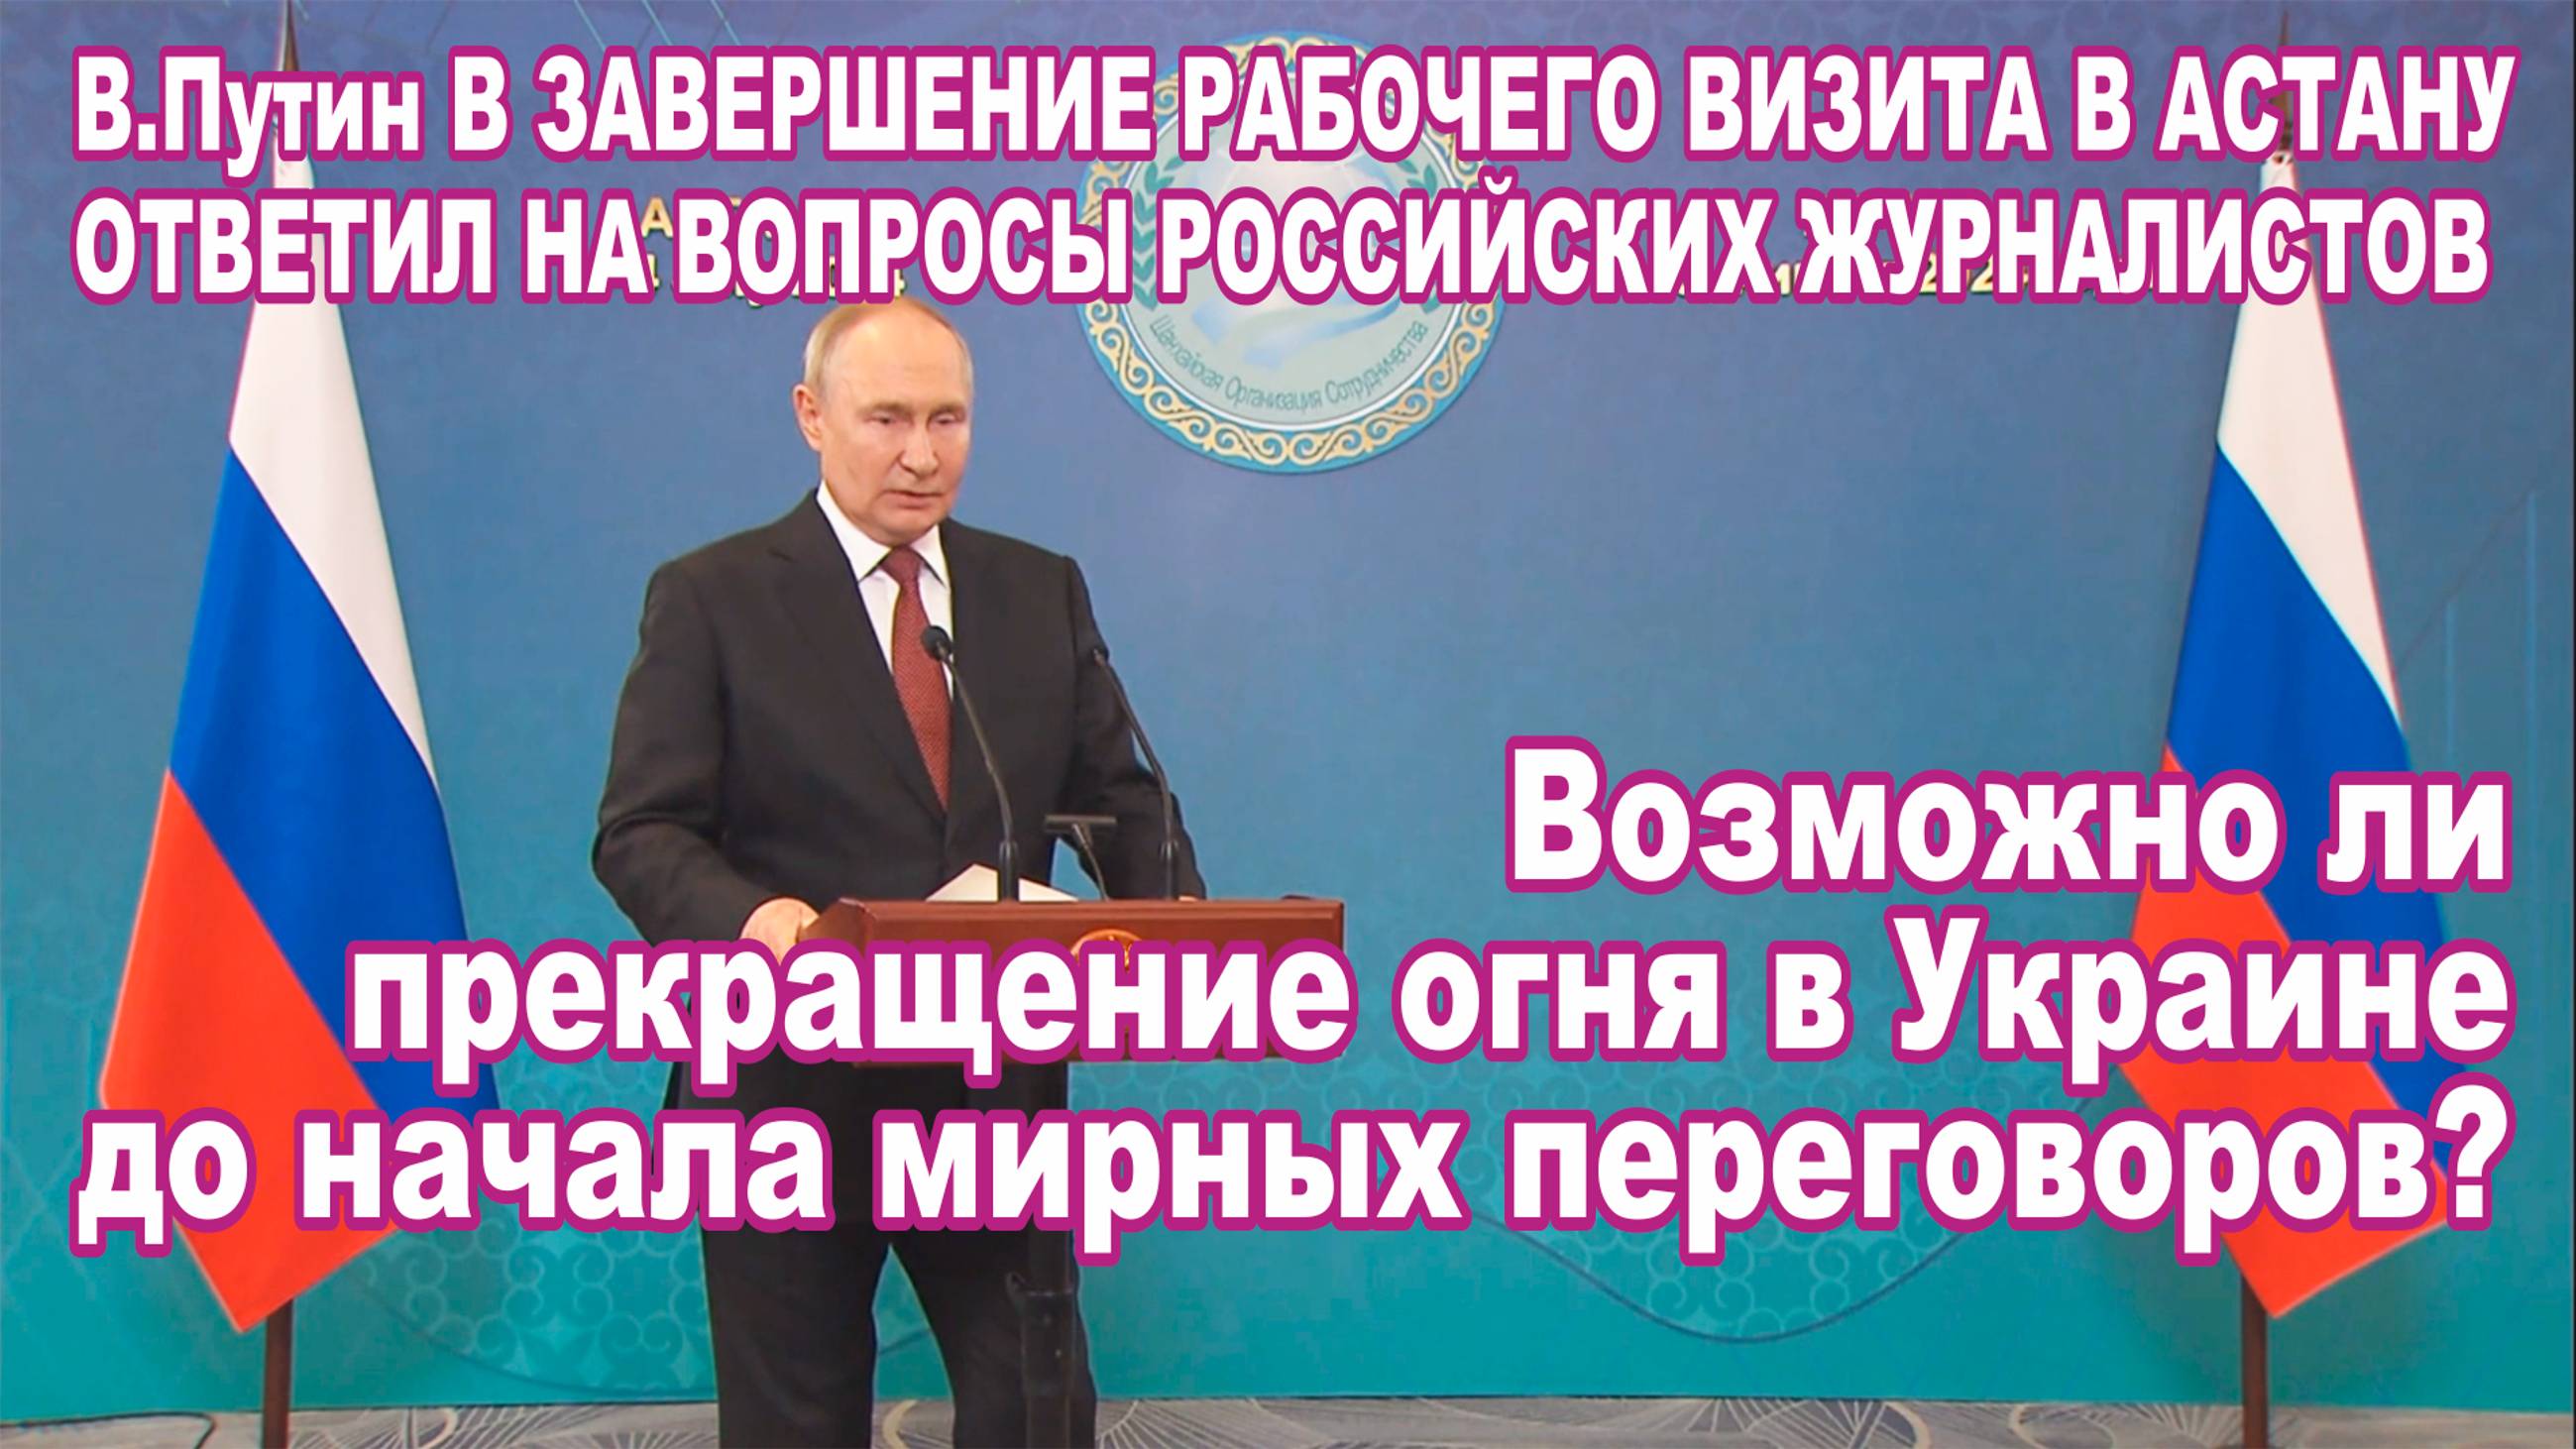 В. Путин в Астане ответил на вопросы журналистов. Возможно ли прекращение огня в Украине?